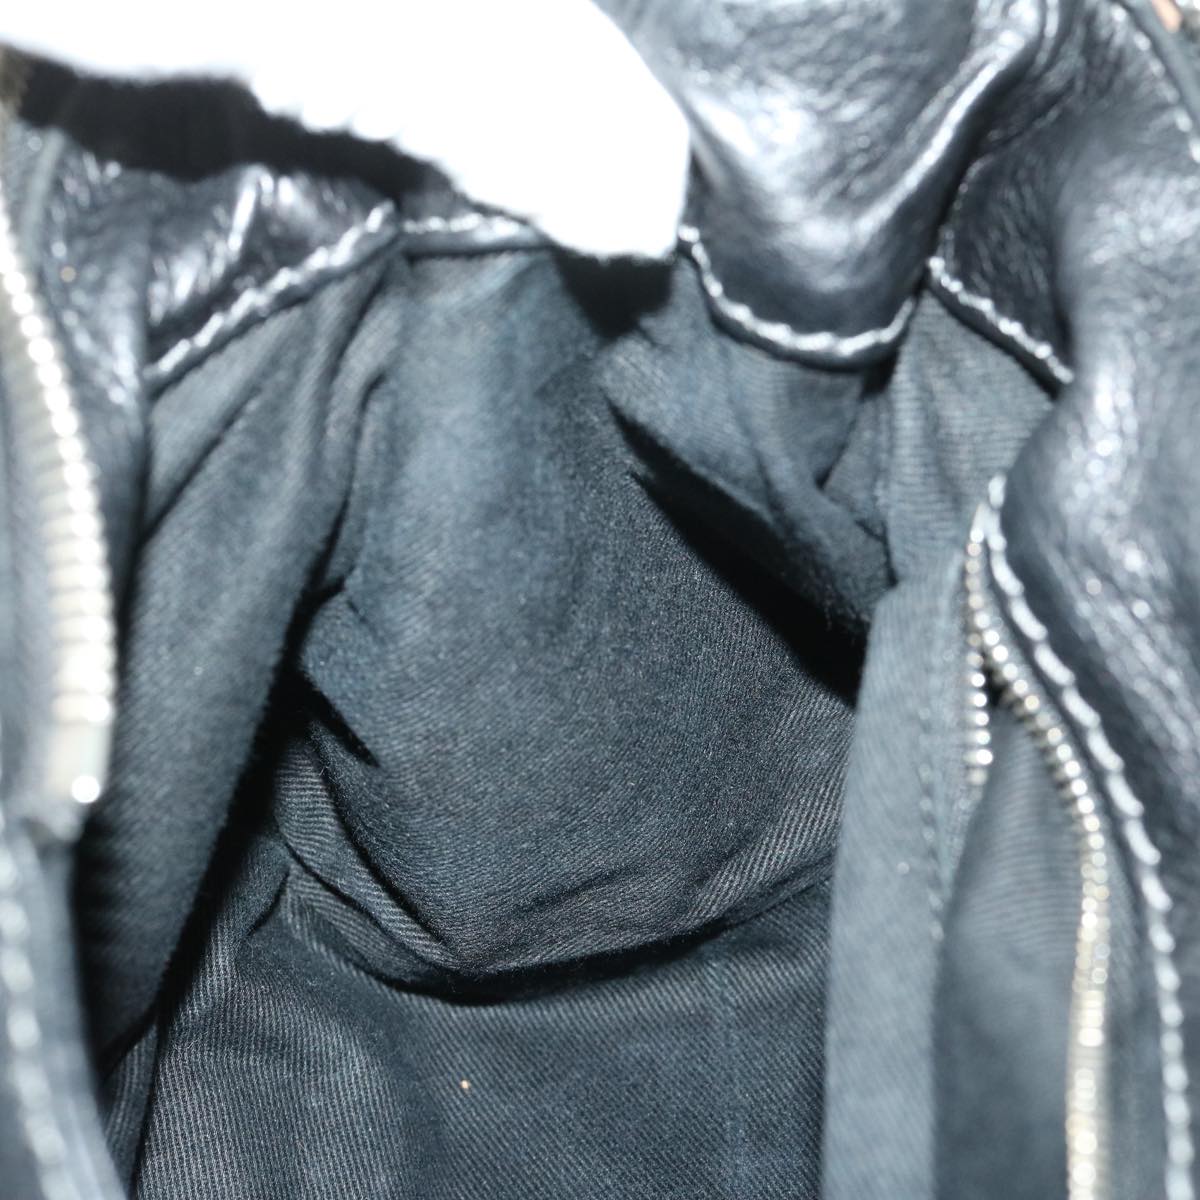 Chloe Paddington Shoulder Bag Leather Black Auth fm3249